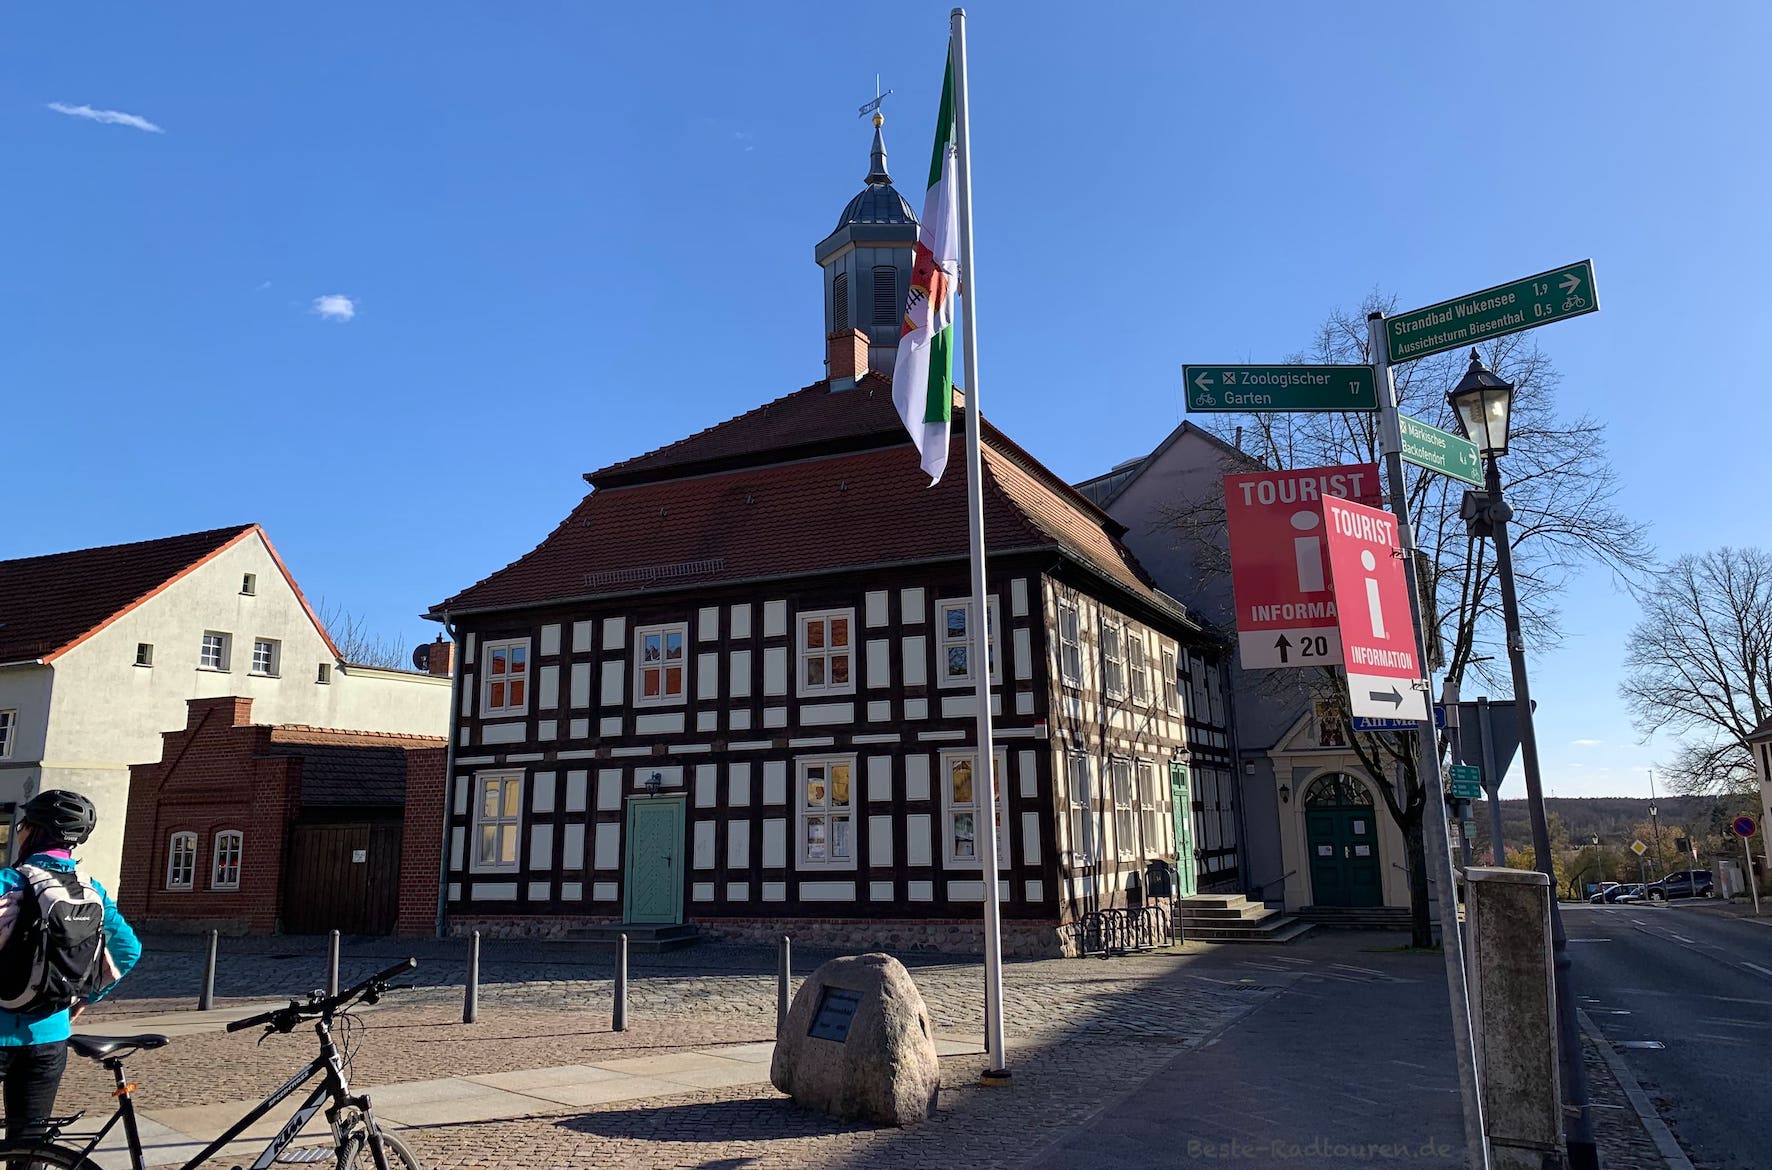 Rathaus von Biesenthal im Landkreis Barnim mit Touristeninformation